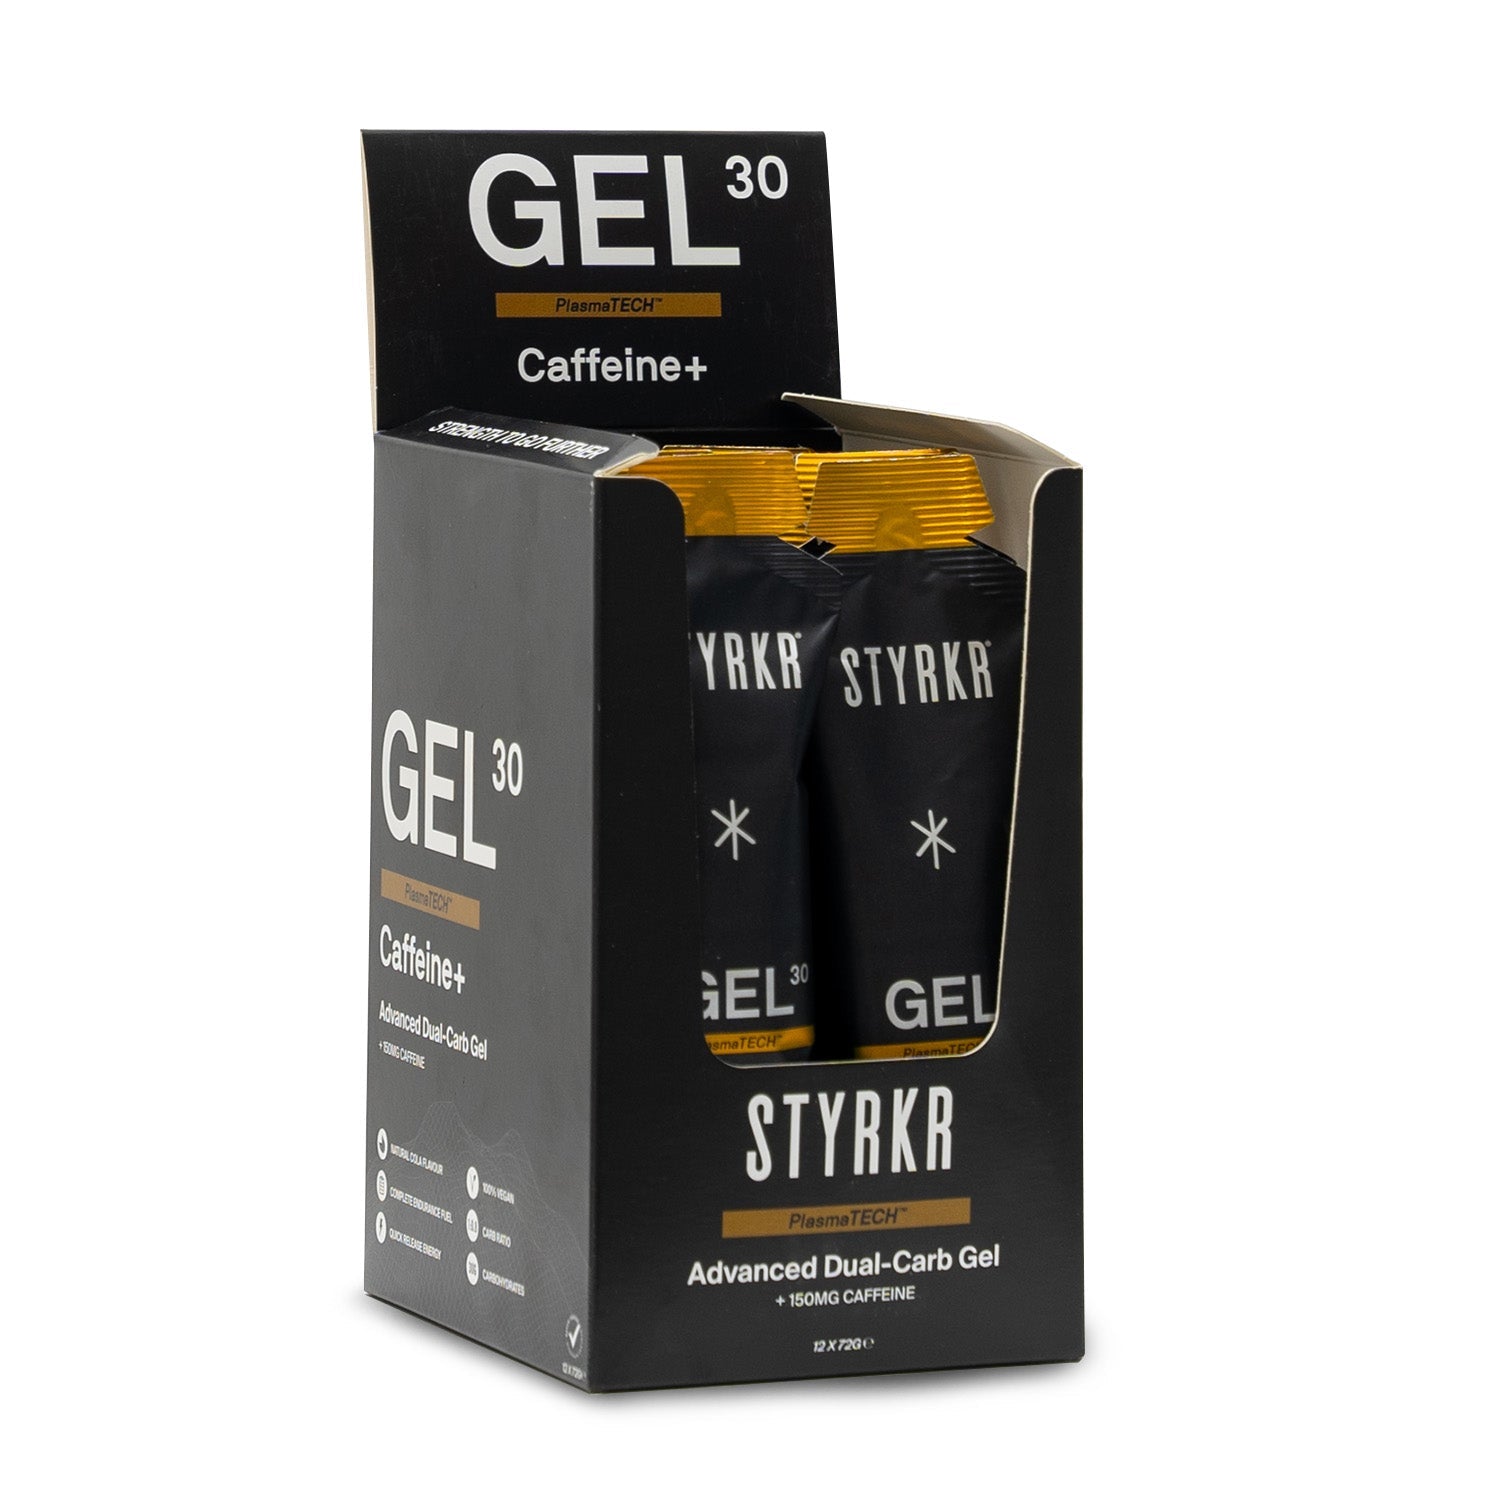 STYRKR Gel30 Dual-Carb Energiegel Caffeine 150mg (72gr)